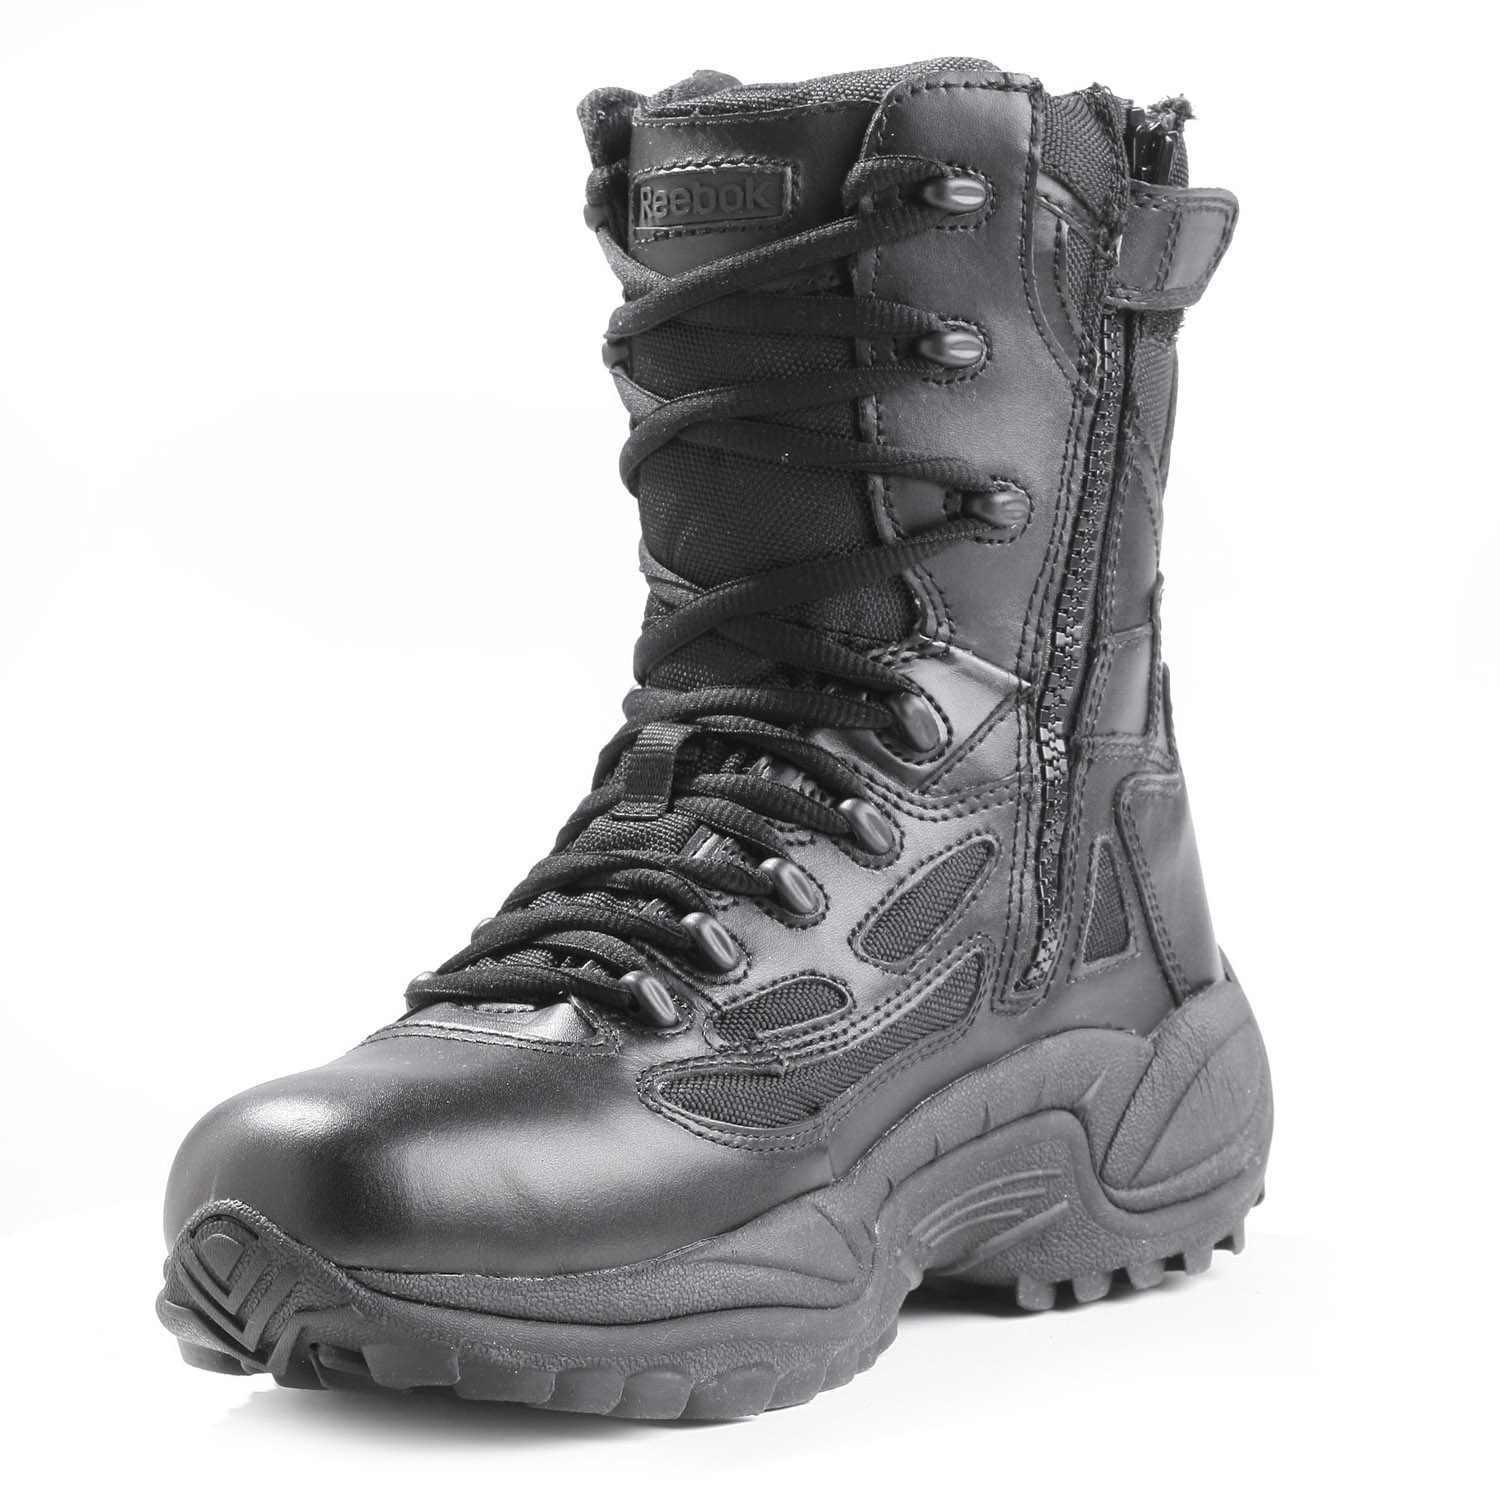 Reebok Women's 8" Rapid Response Side Zip Tactical Boots